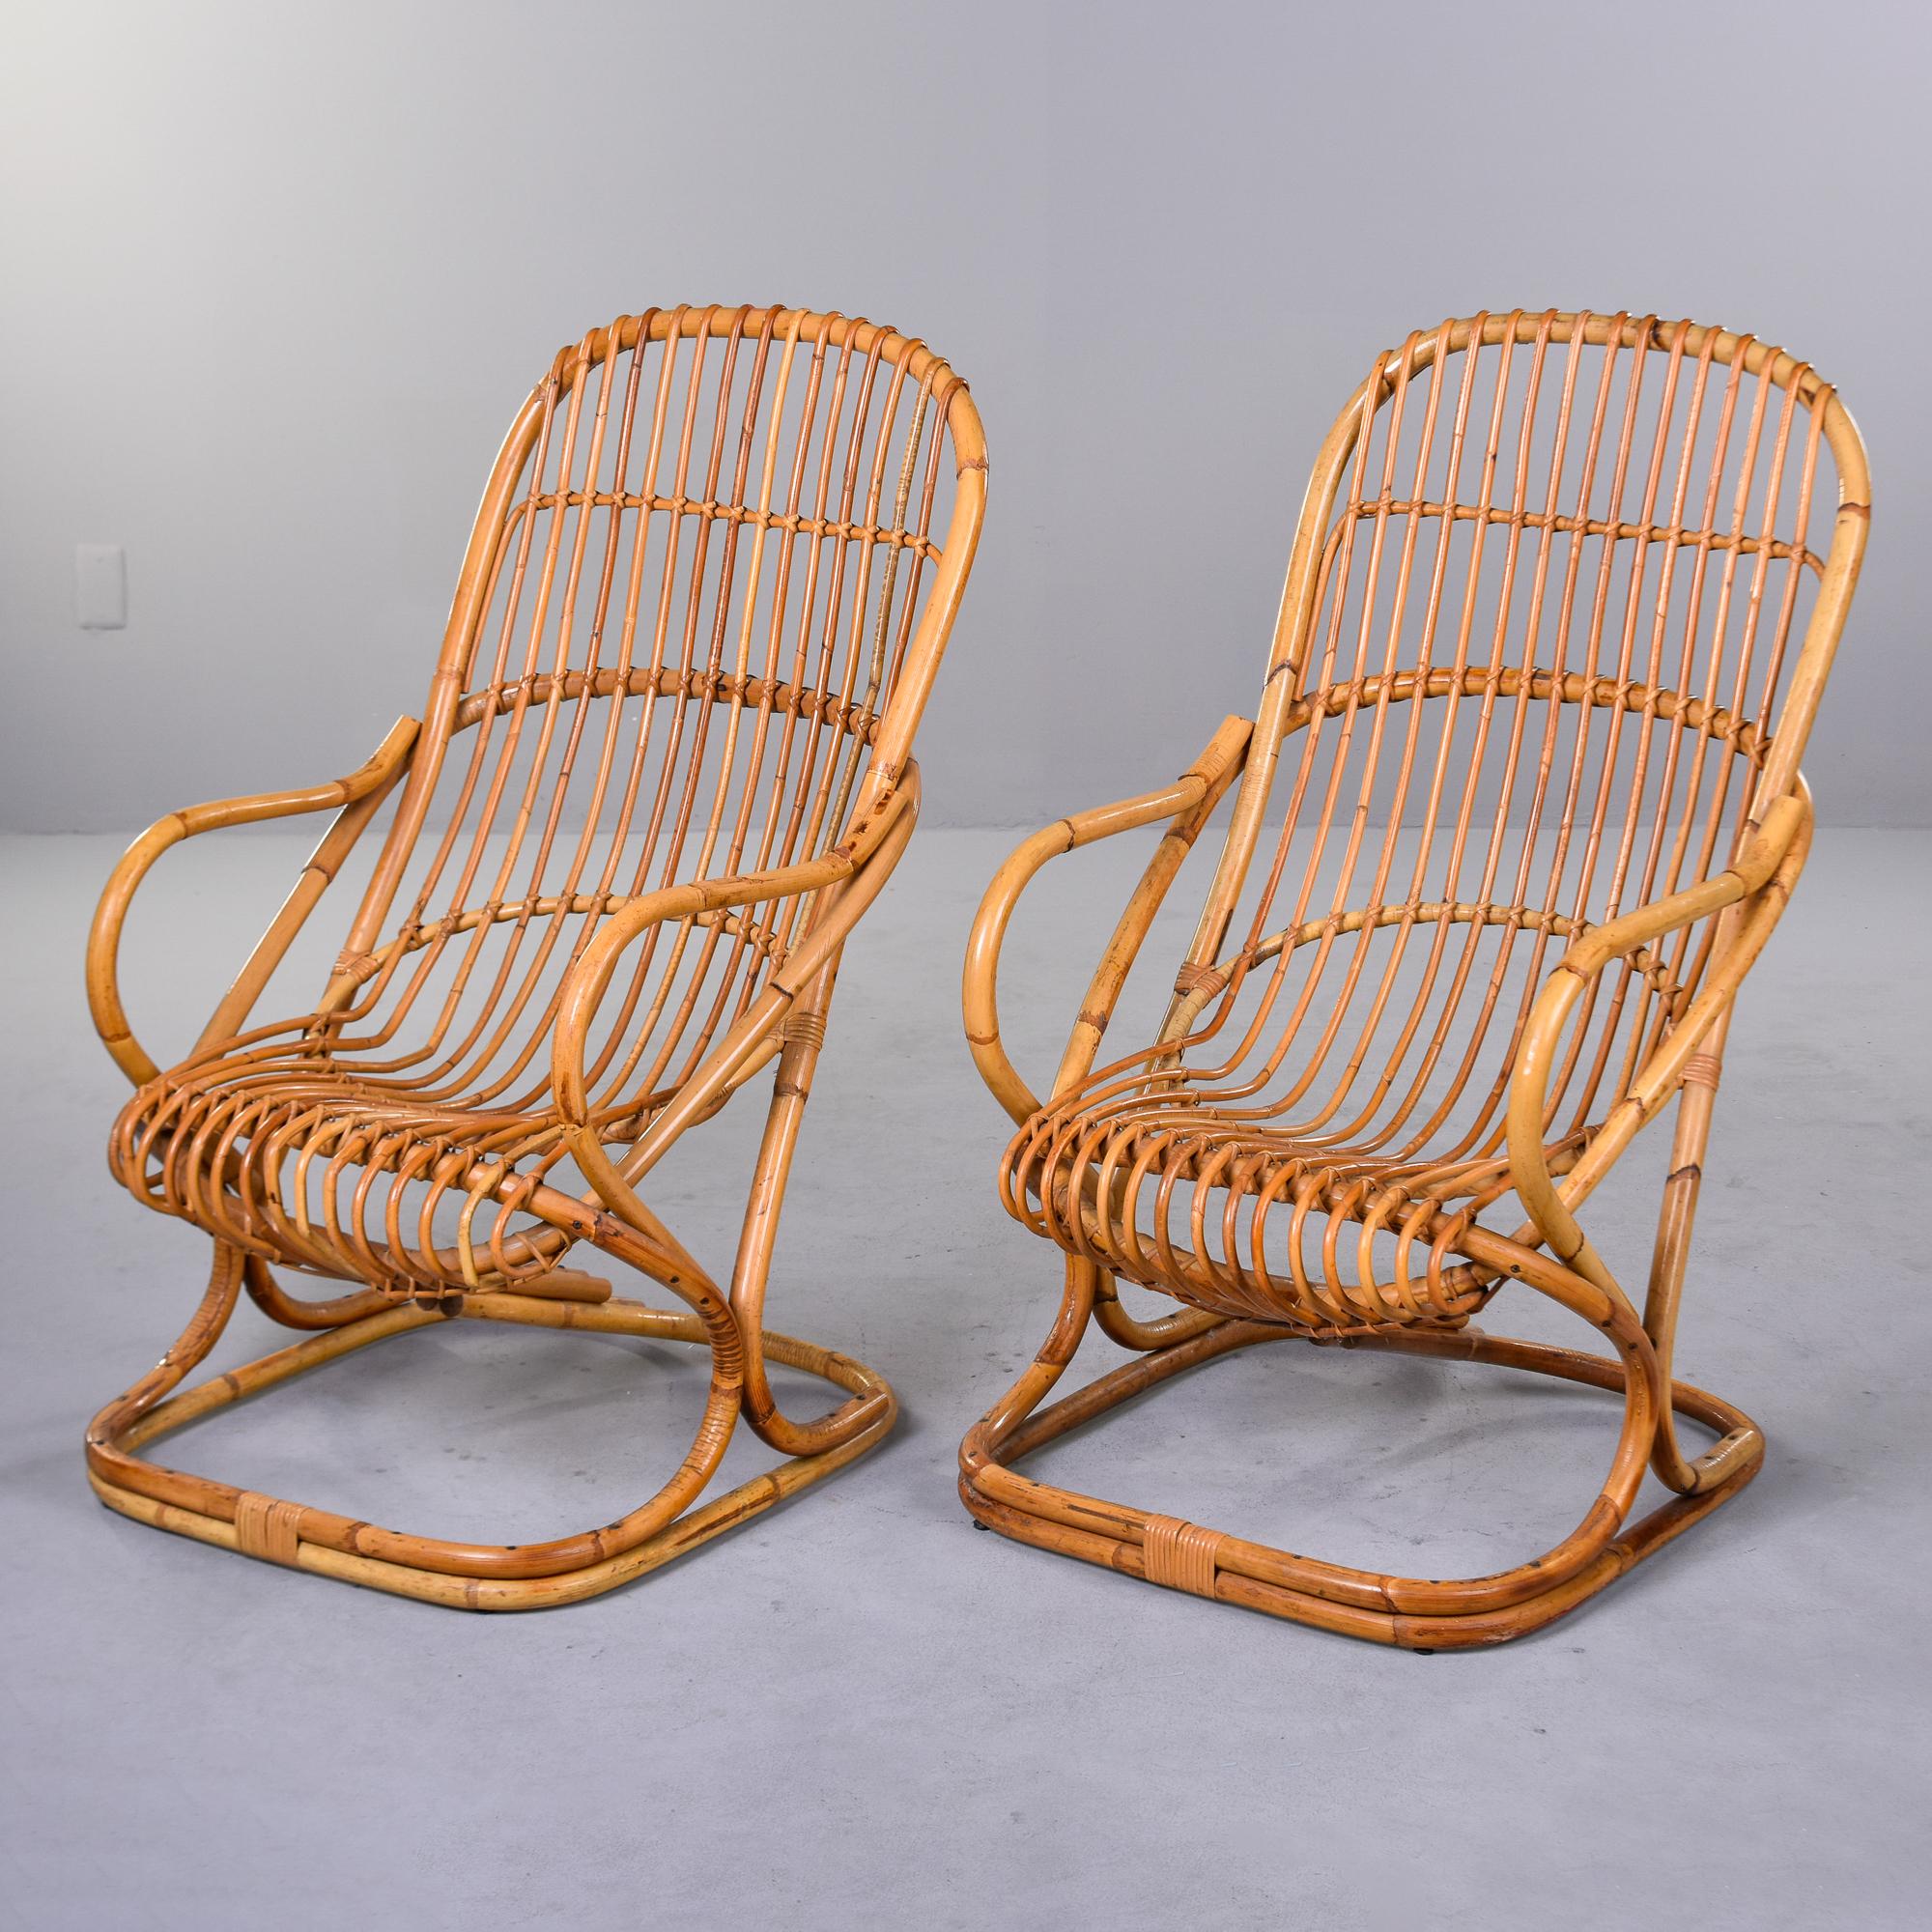 Trouvée en Italie, cette paire de fauteuils en rotin a été conçue par Tito Agnoli en 1959. Base rectangulaire avec des sièges en forme de boule et des accoudoirs incurvés, ces chaises fonctionnent avec ou sans coussins. Aucun coussin n'a été trouvé